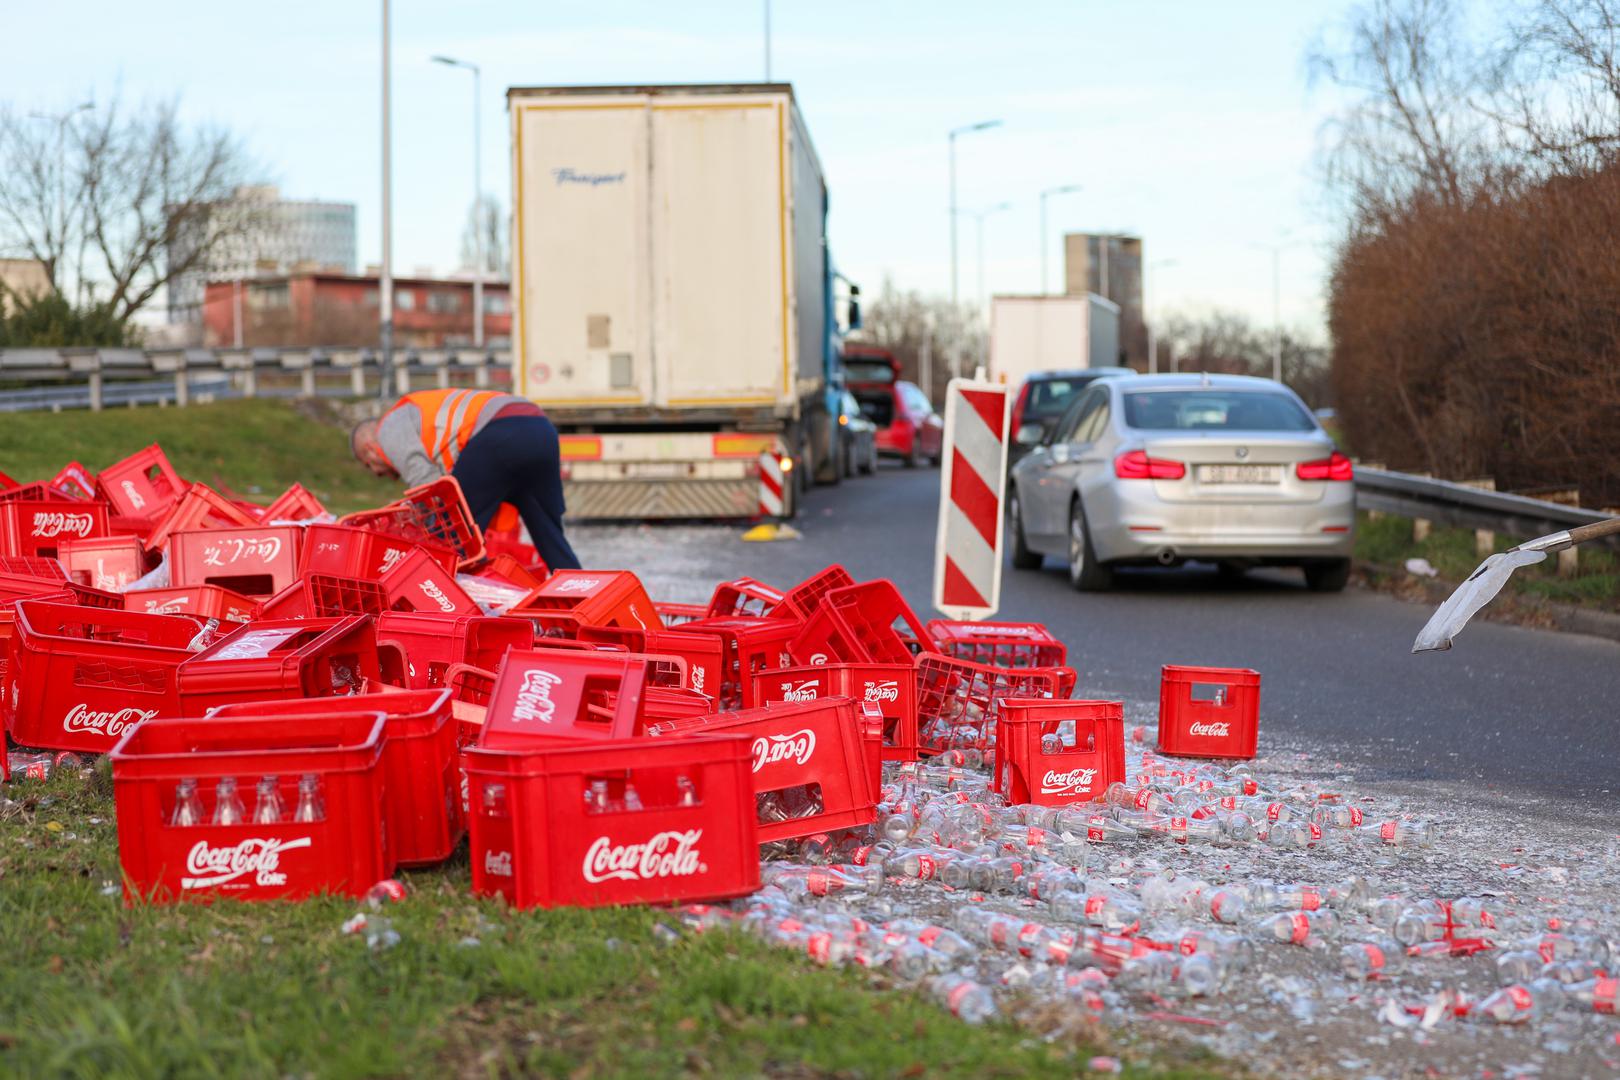 Nesvakidašnji prizor zabilježen je danas na križanju Držićeve i Slavonske u Zagrebu. Iz kamiona su izletjele gajbe s gaziranim pićem Coca-Cola te su se stotine staklenih bočica razletjele po cesti.